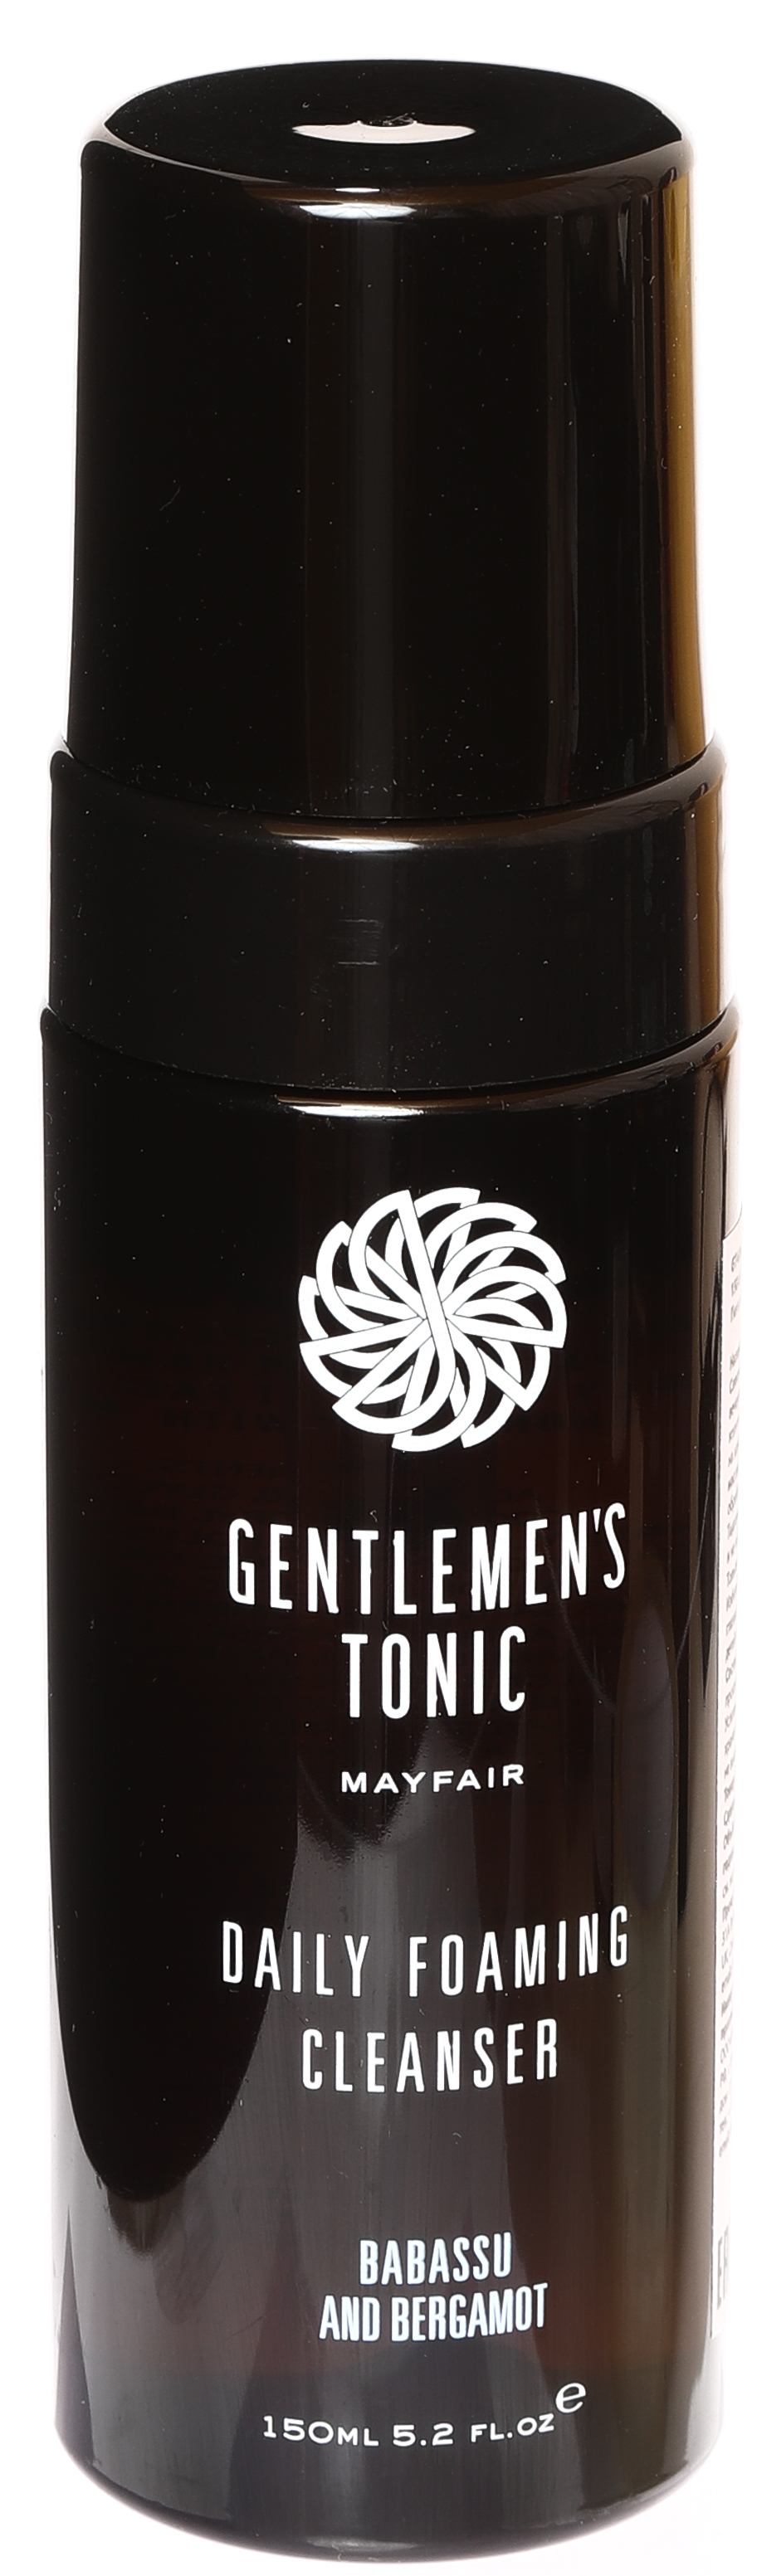 Пенка для умывания очищающая для мужчин Gentlemen's Tonic 150 мл vellutier свеча клуб джентельменов gentlemen s lounge 515